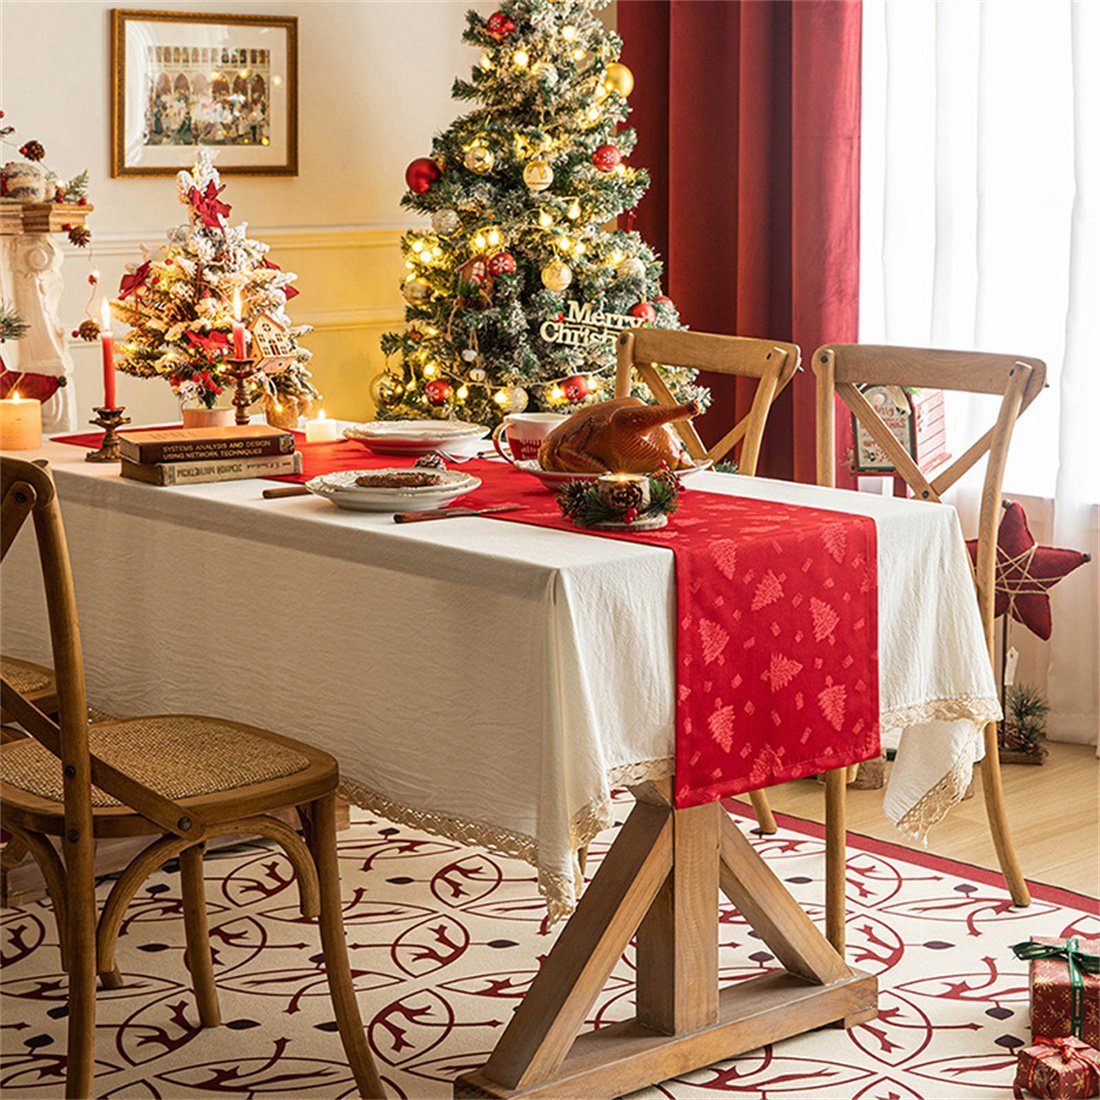 Gedruckte Party Tischdecke,Festliche Weihnachtsdekoration DÖRÖY Tischläufer Tischflaggen